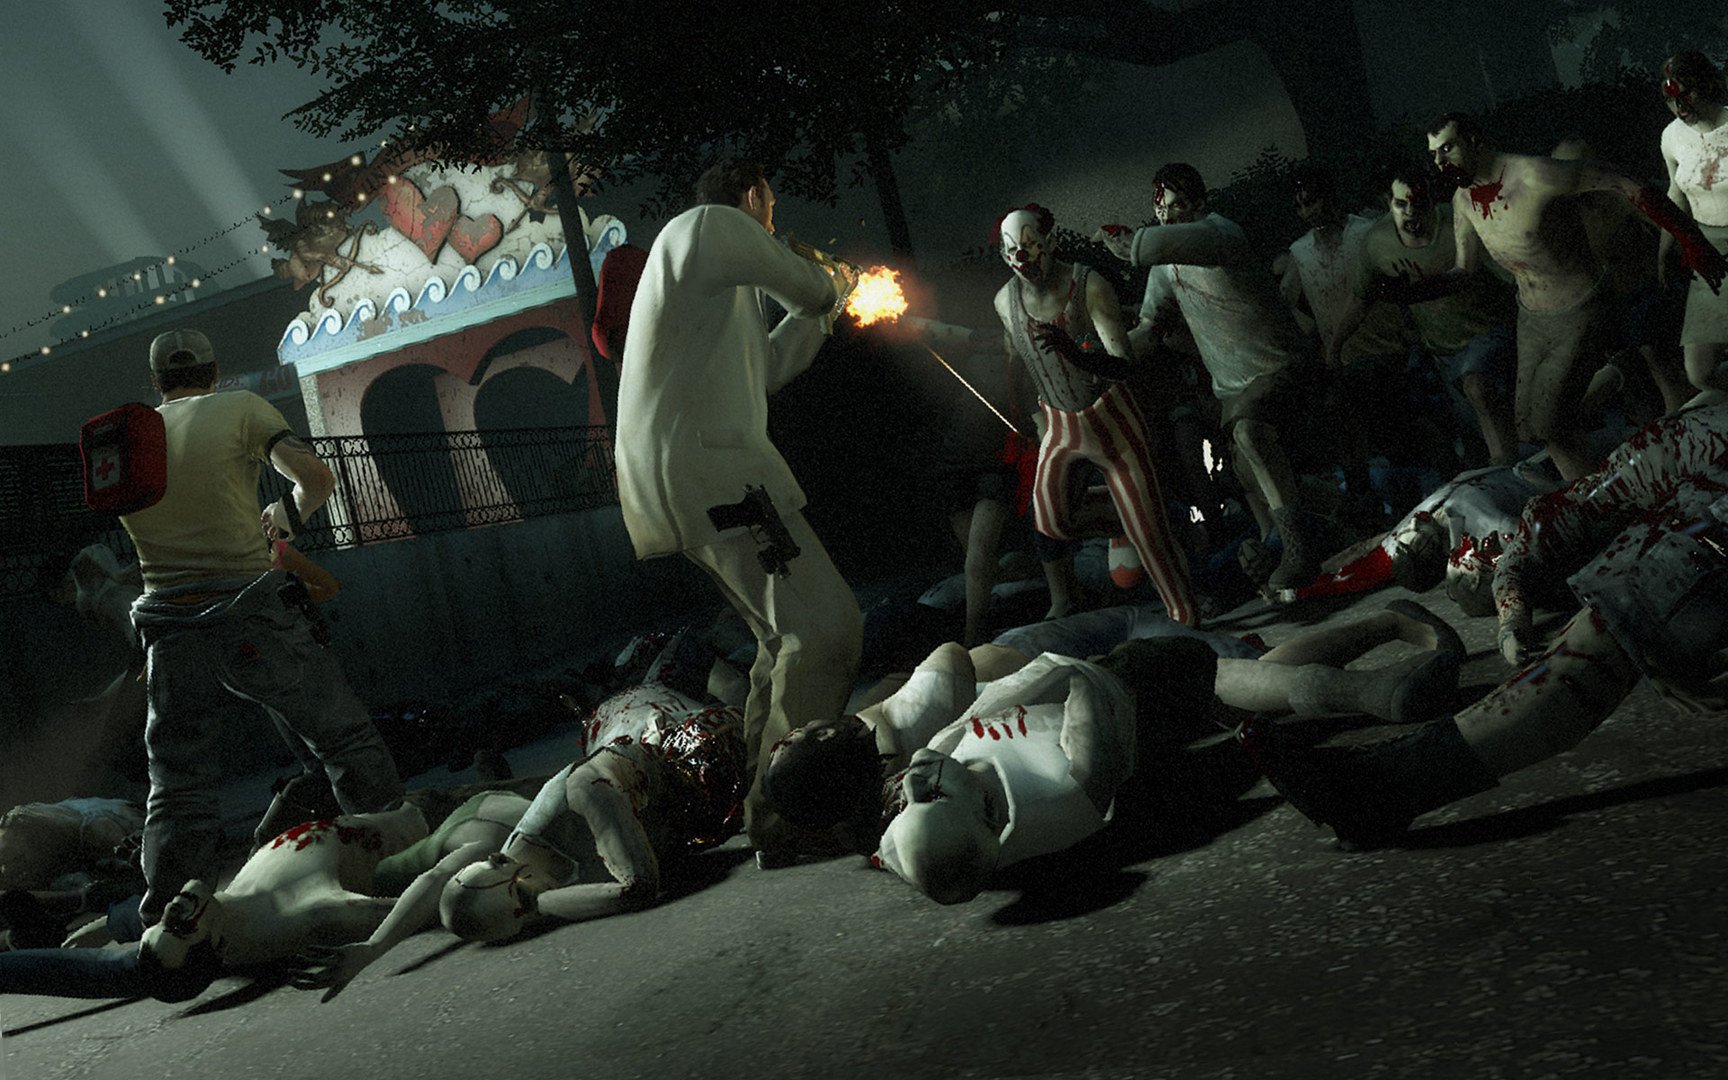 Sobreviventes no chão, disparando contra zombies.